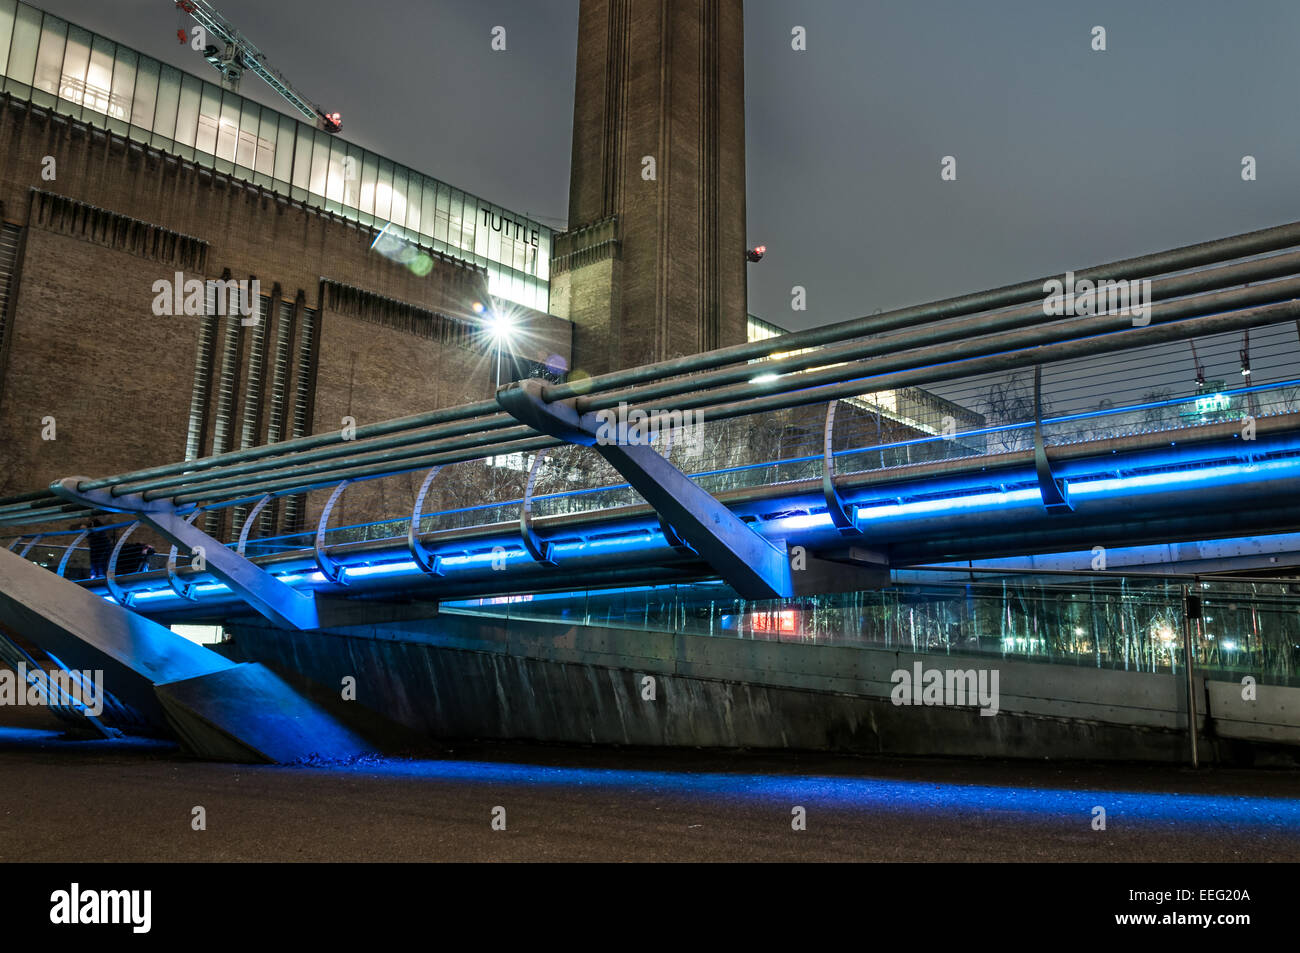 La galería de arte Tate Modern y el puente del milenio en la noche Foto de stock